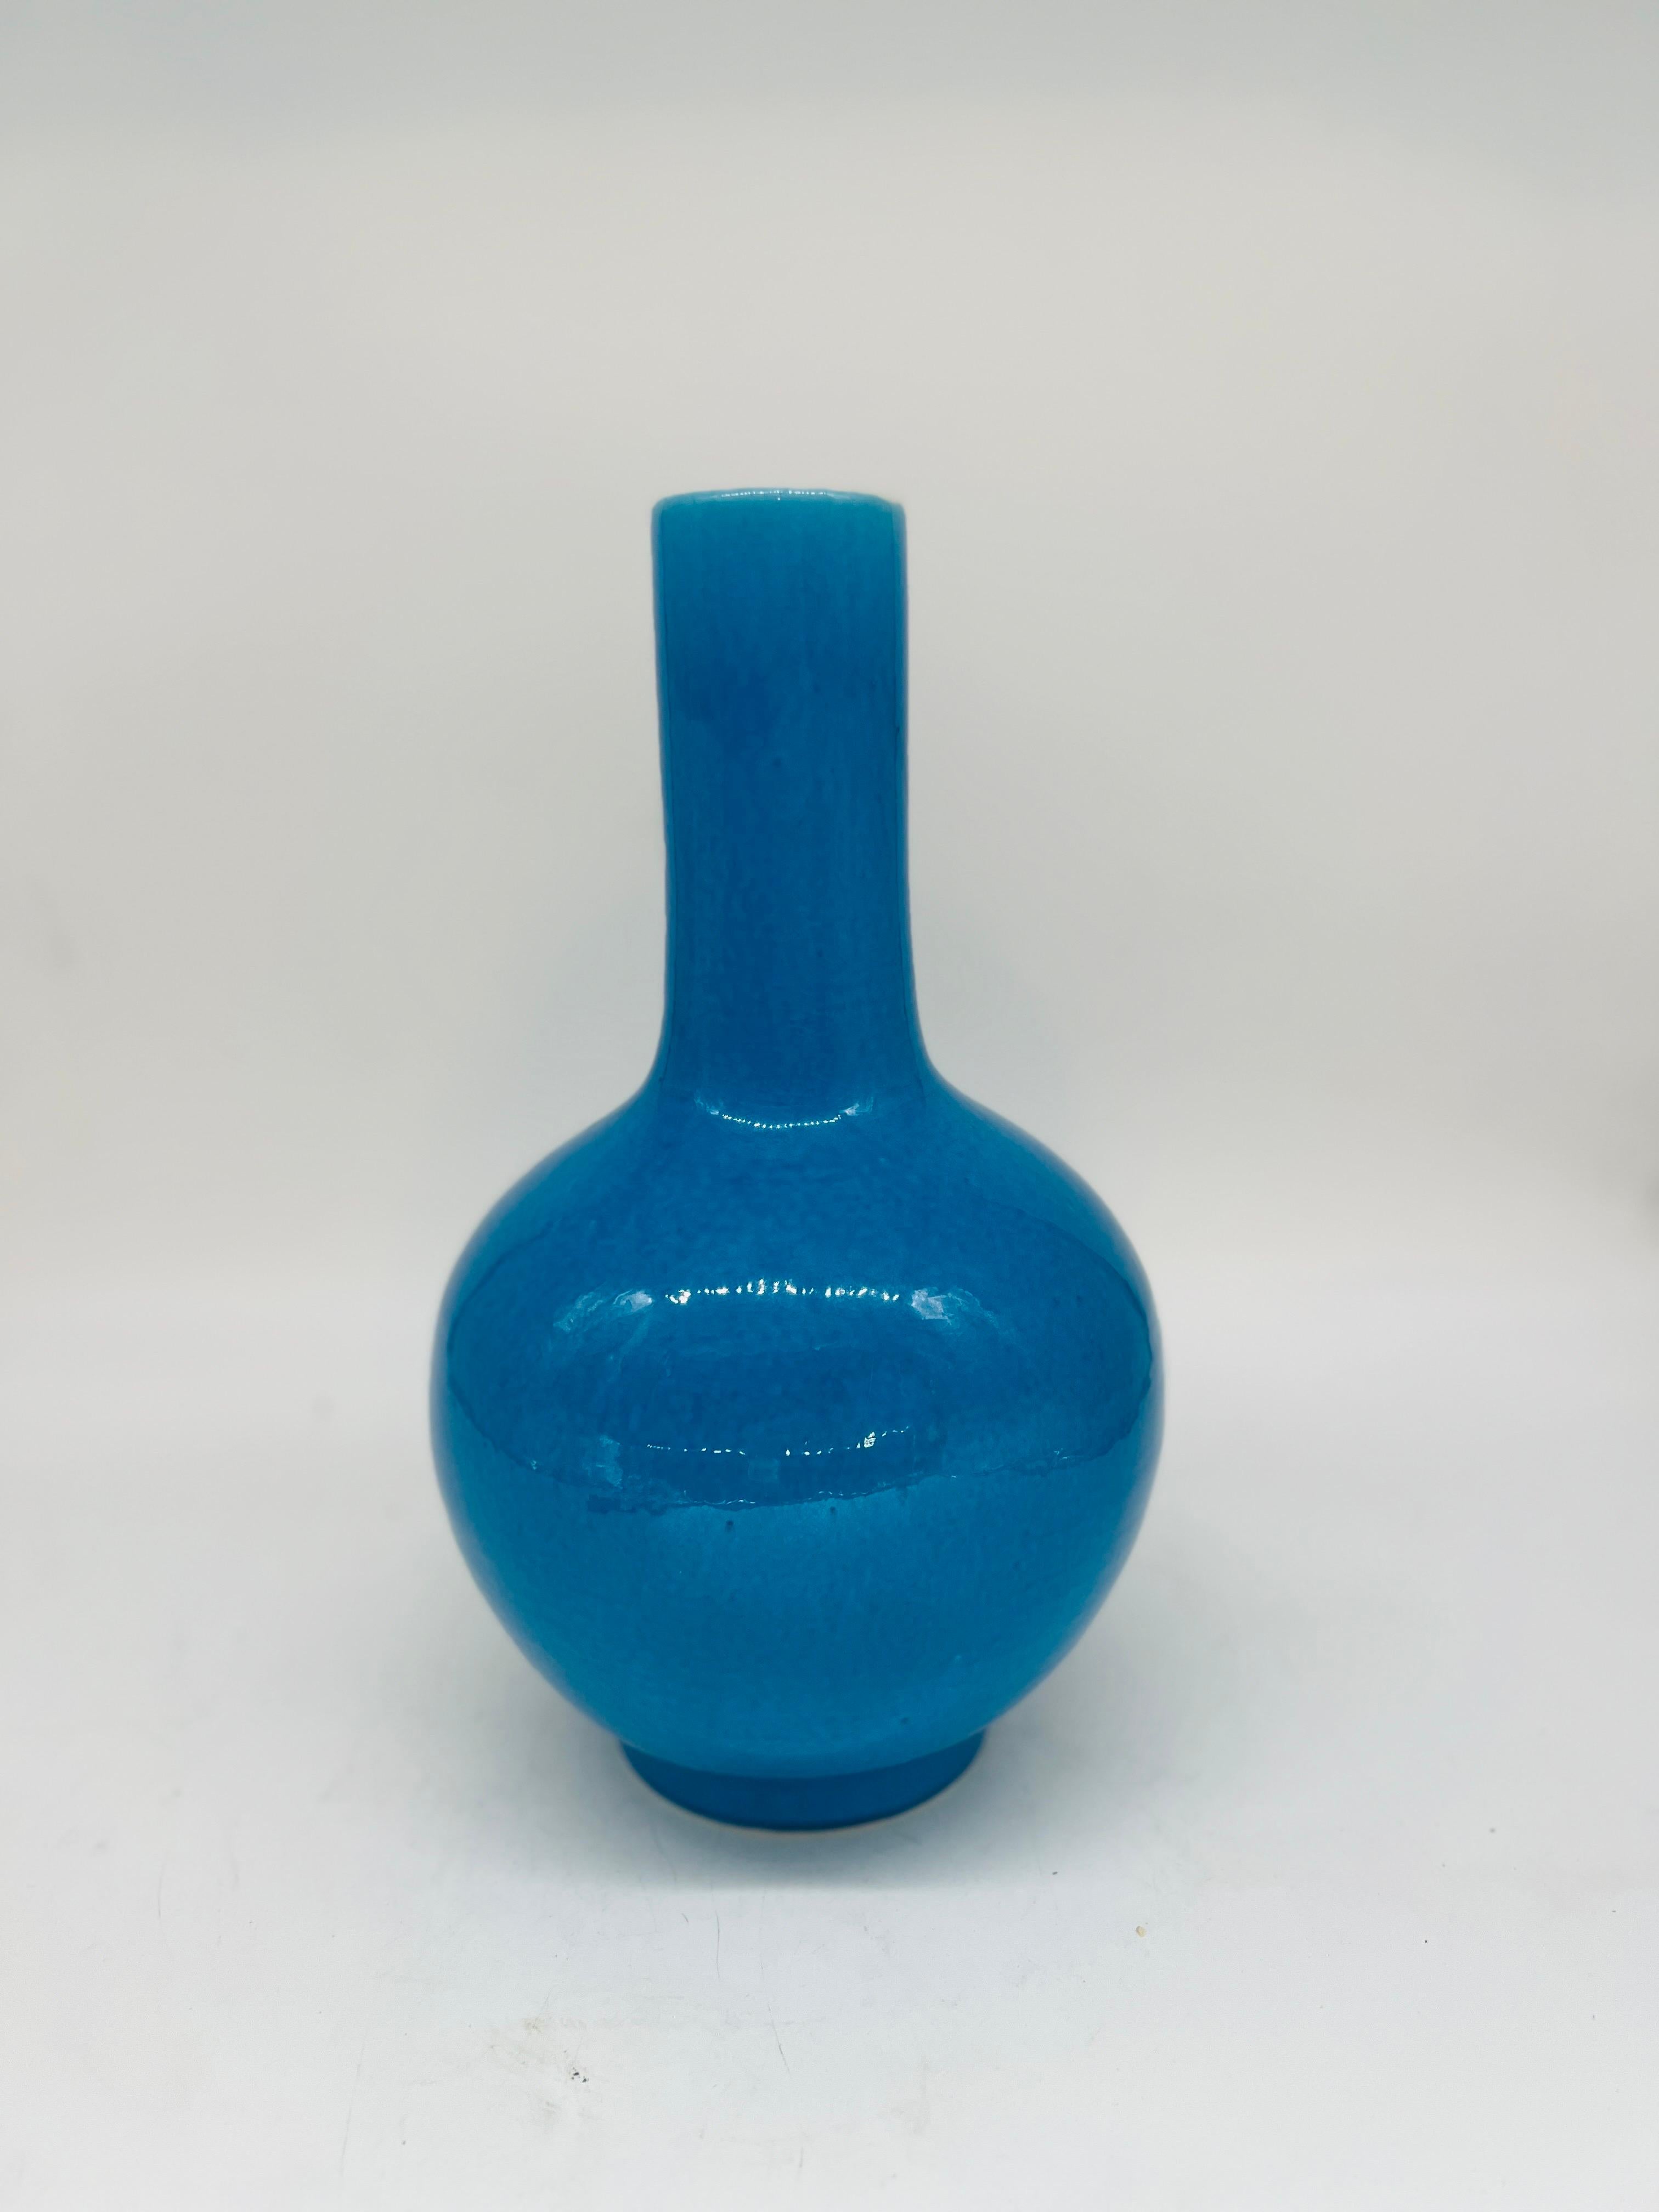 Chinesisch, 20. Jahrhundert.

Eine schöne chinesische Pfau blau gefärbt Flasche Vase. Die Unterseite ist mit 6 Zeichen gekennzeichnet.